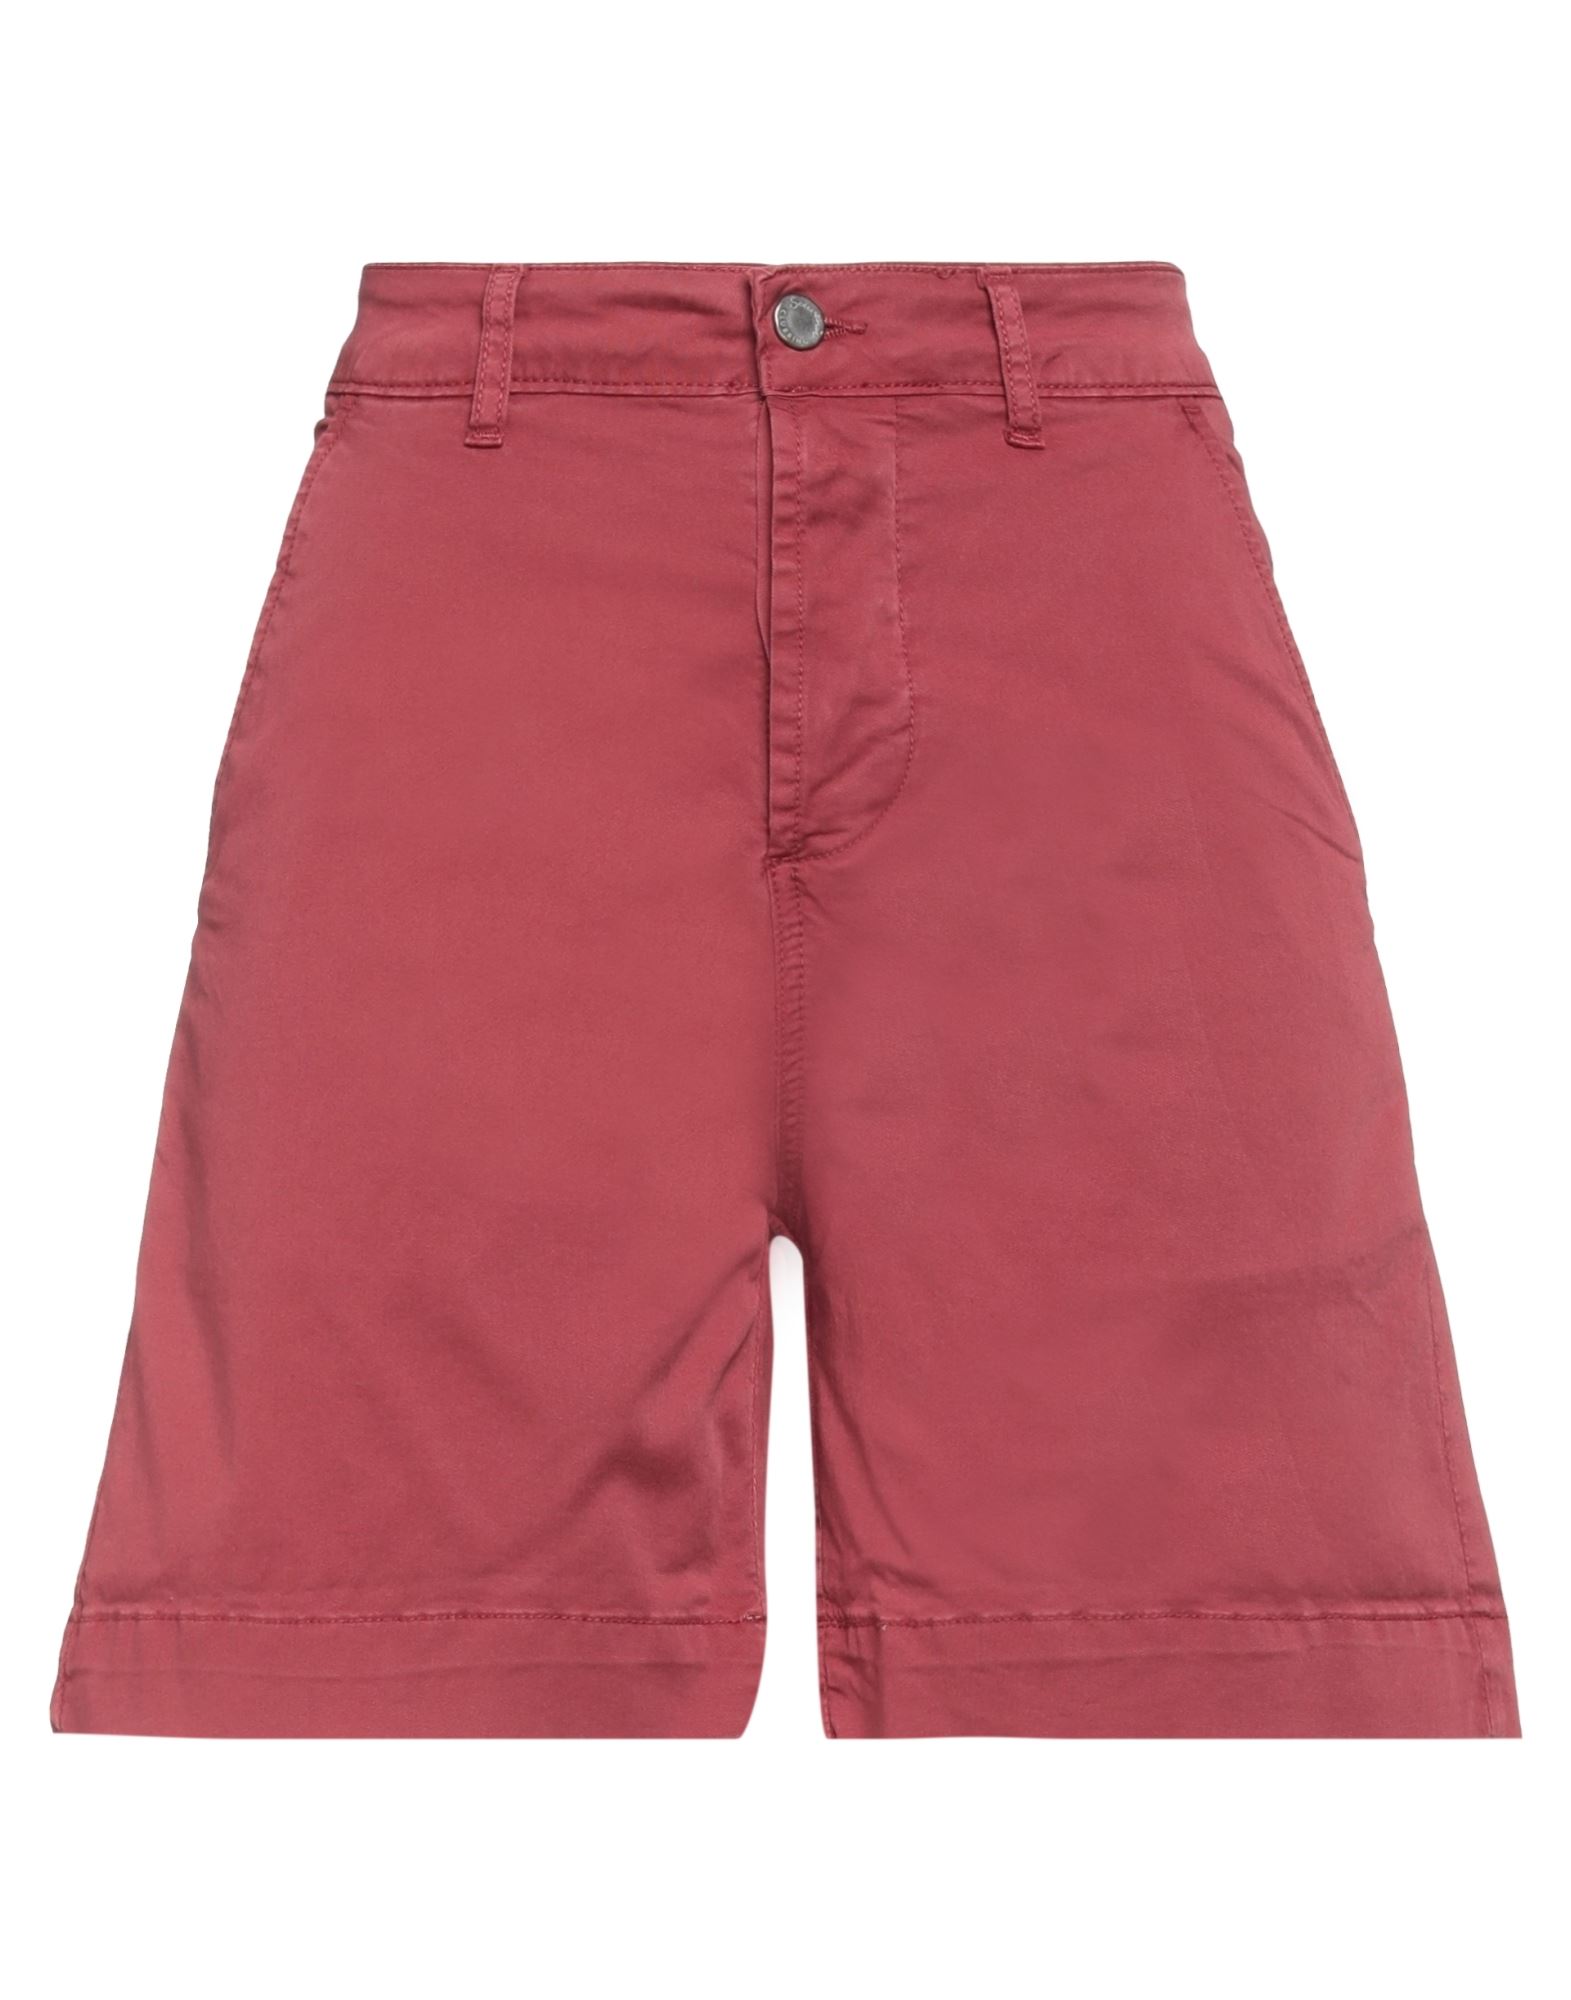 Souvenir Woman Shorts & Bermuda Shorts Brick Red Size Xs Cotton, Elastane